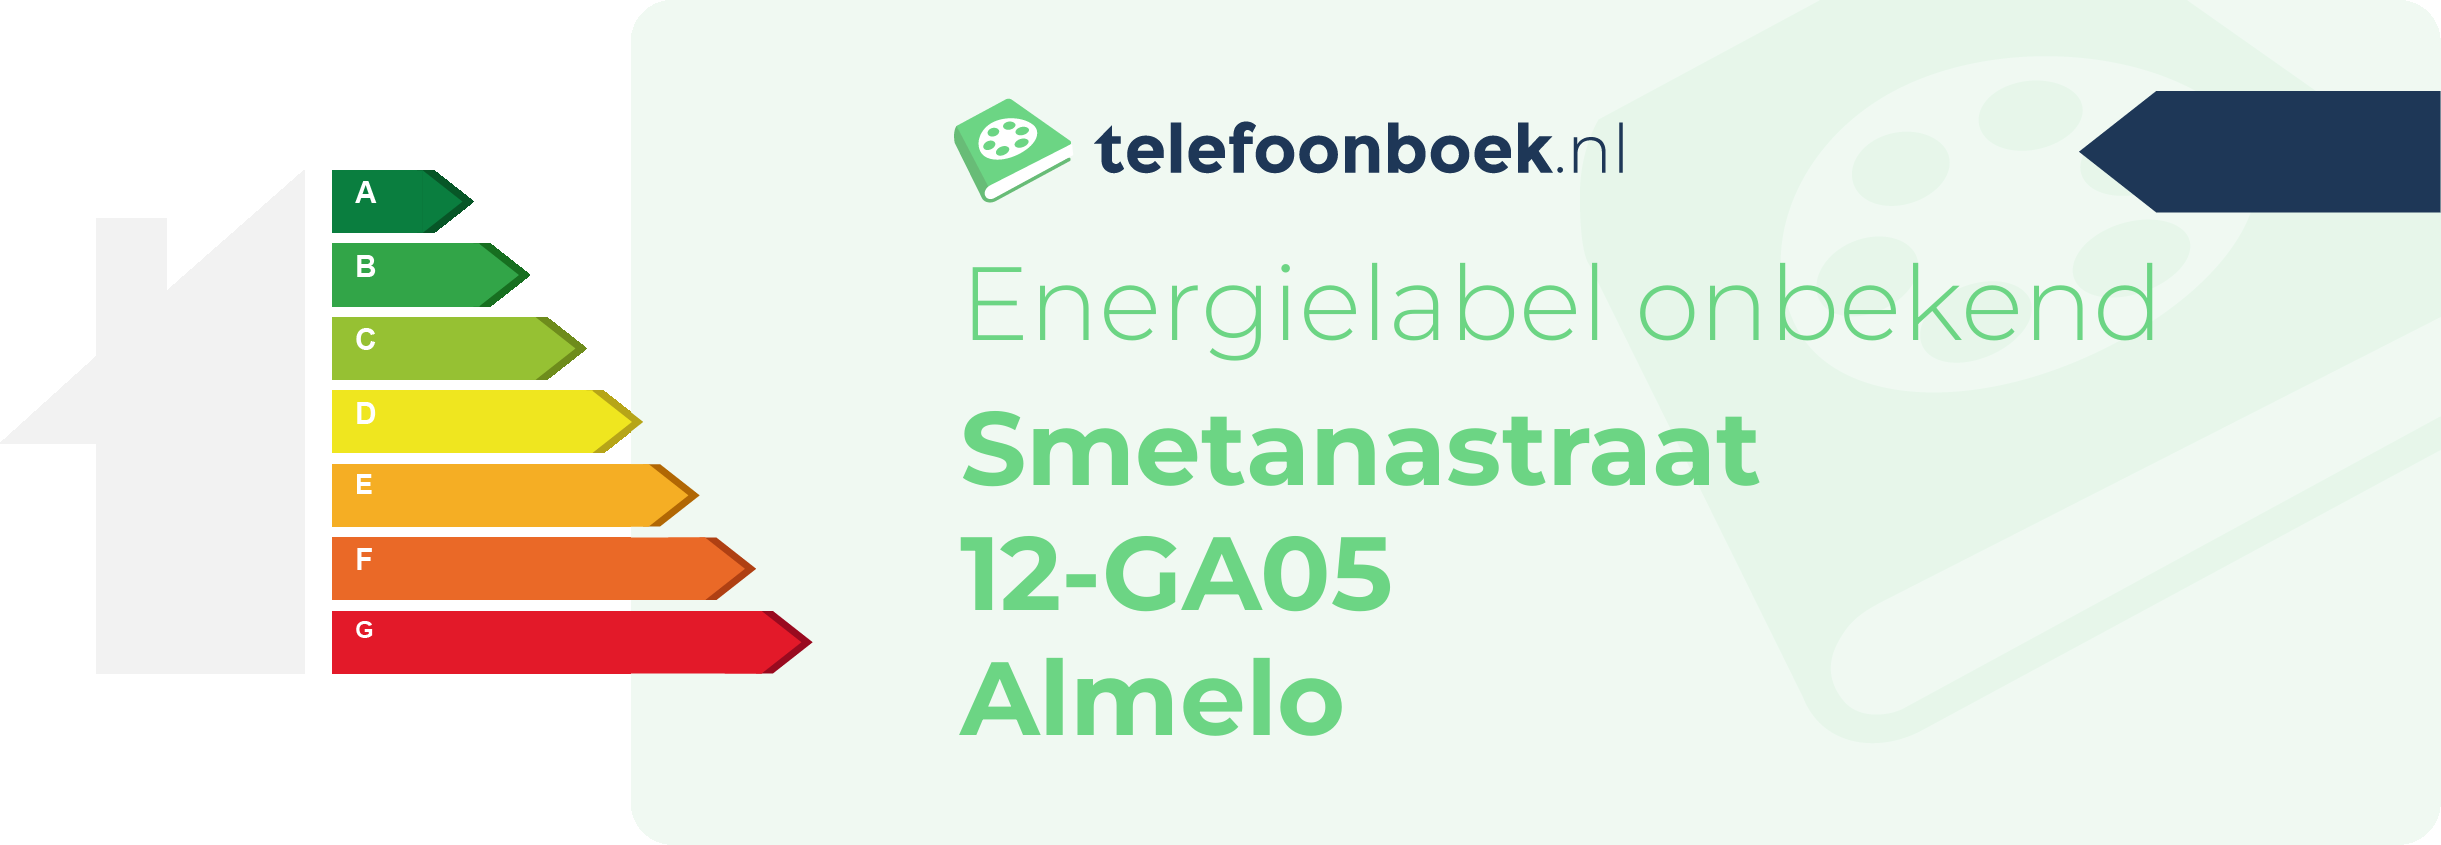 Energielabel Smetanastraat 12-GA05 Almelo